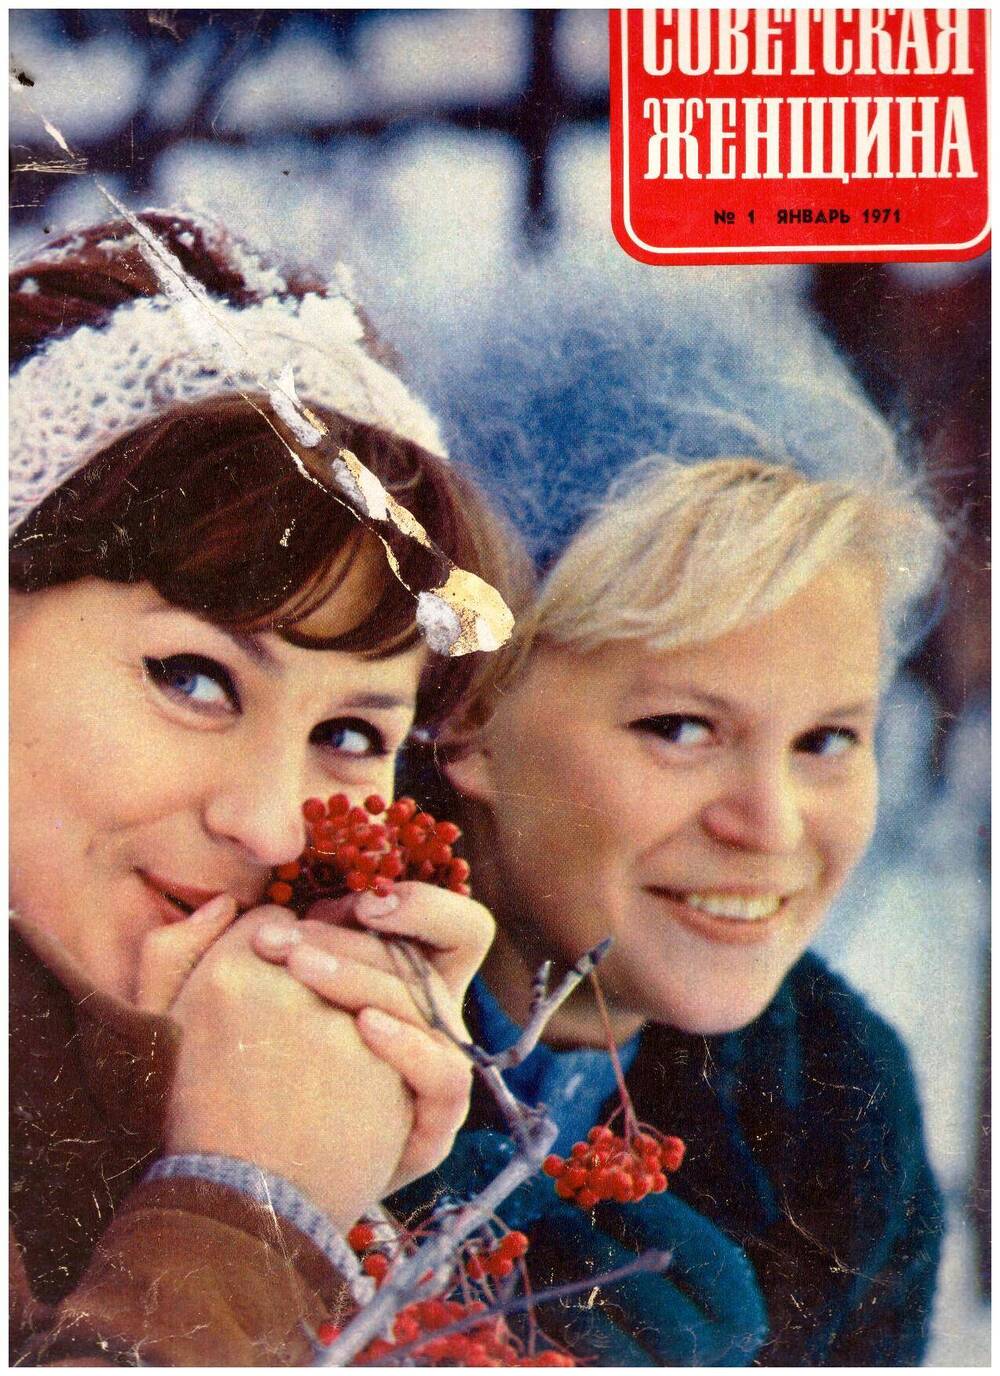 Журнал Советская женщина №1, 1971 г. Статья Академик Домбровская А. Тараданкина на русском языке